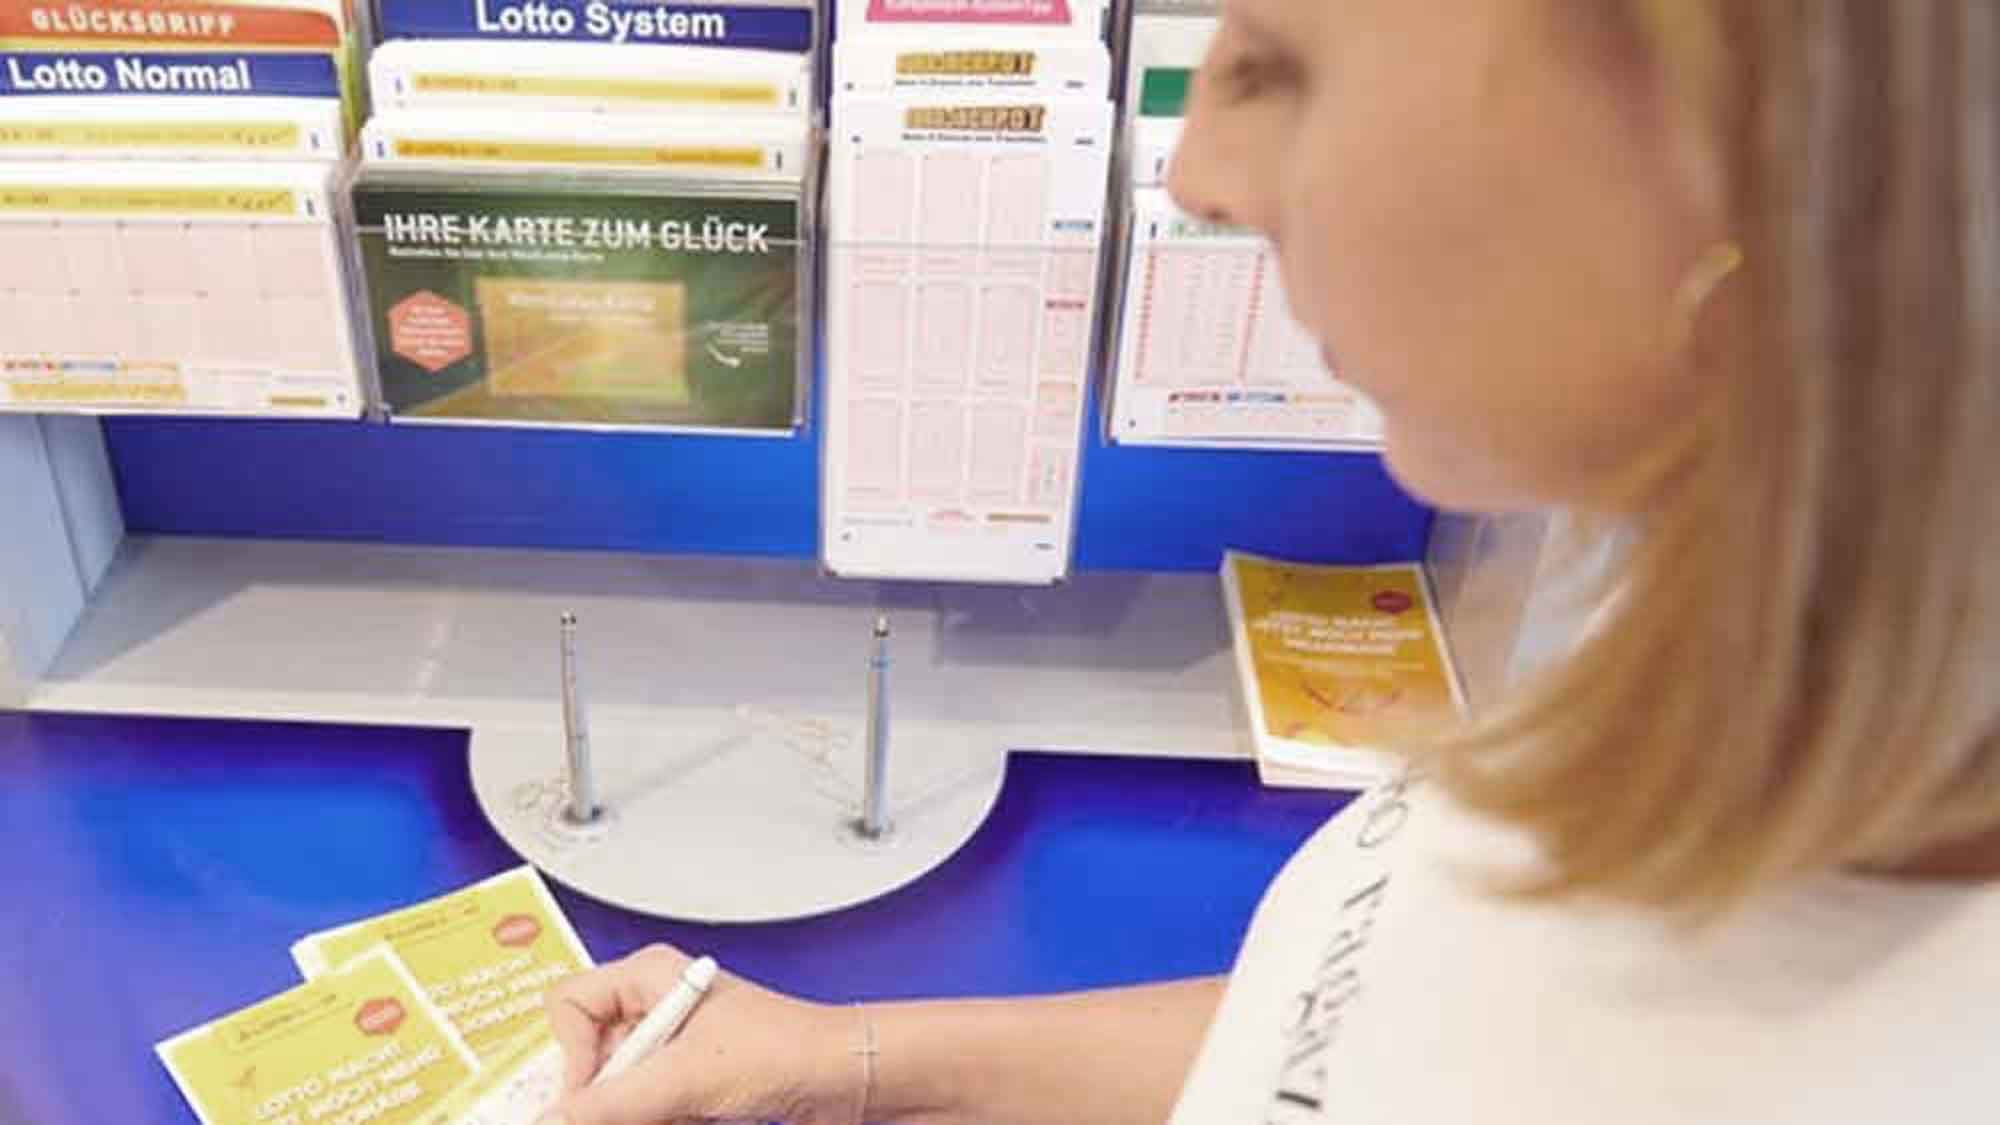 Lotto 6 aus 49«: System Anteilspieler teilen sich Millionen aus 2. Gewinnklasse